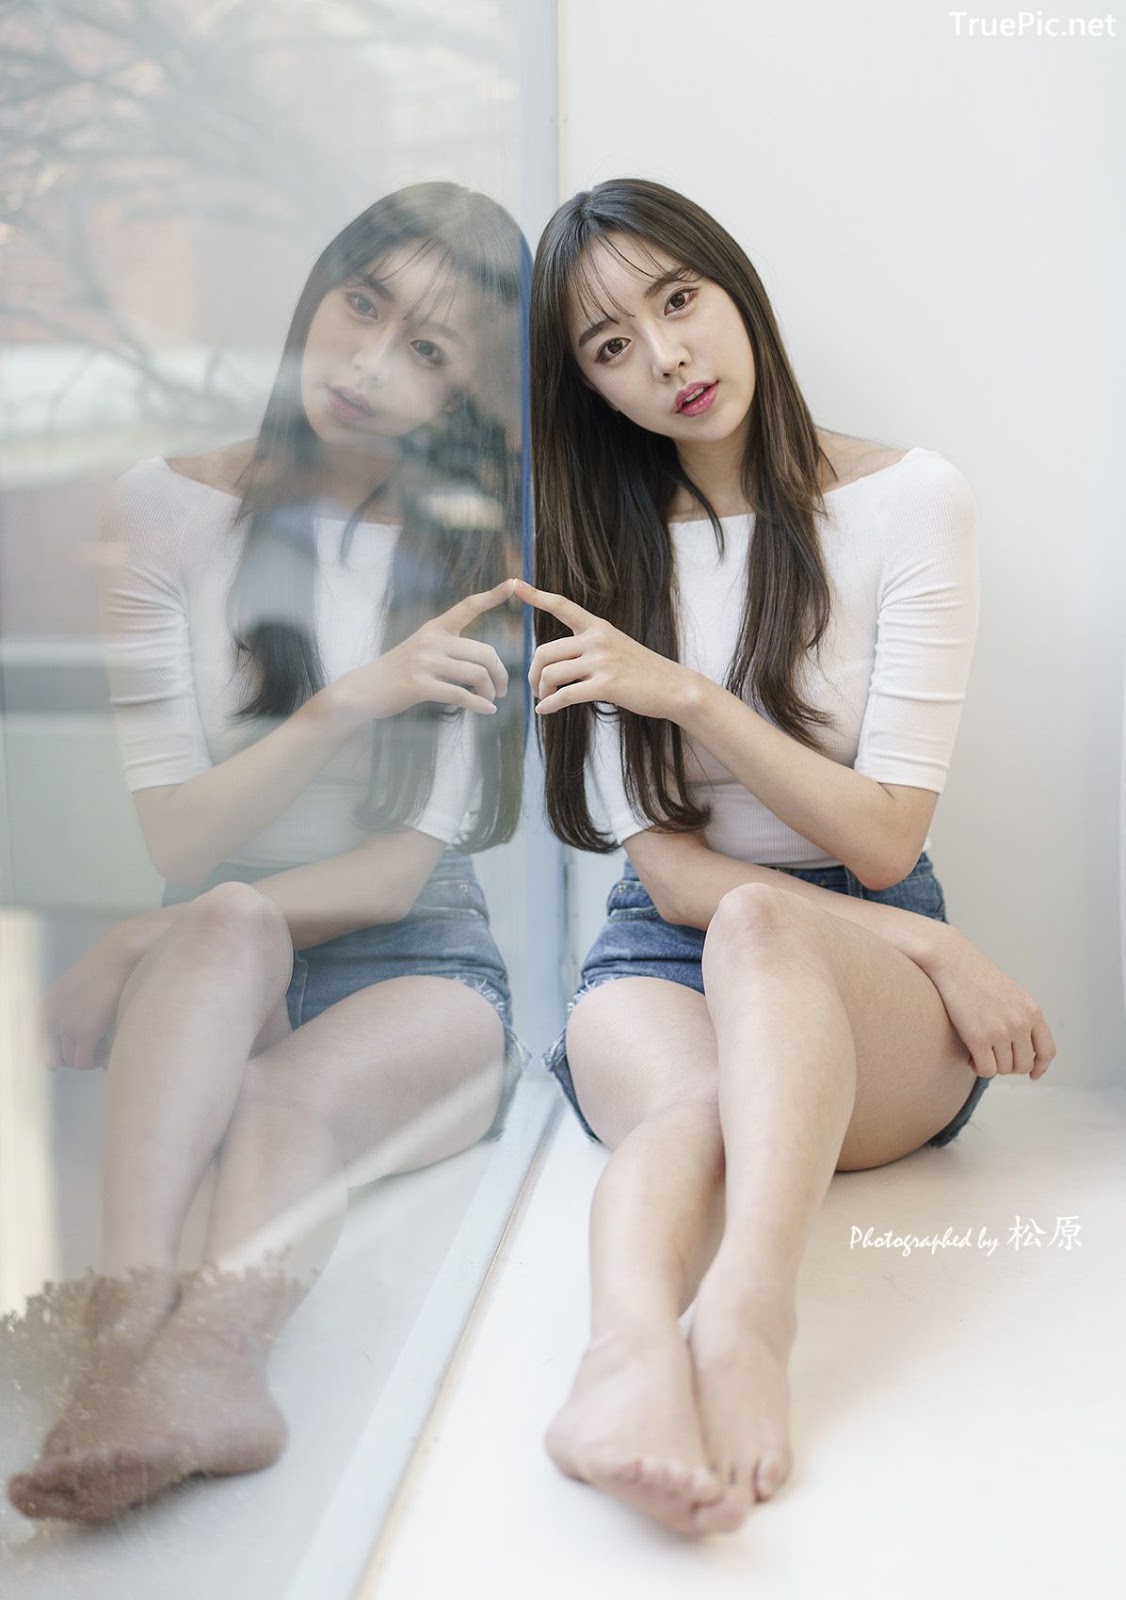 Image-Korean-Hot-Model-Go-Eun-Yang-Indoor-Photoshoot-Collection-TruePic.net- Picture-48